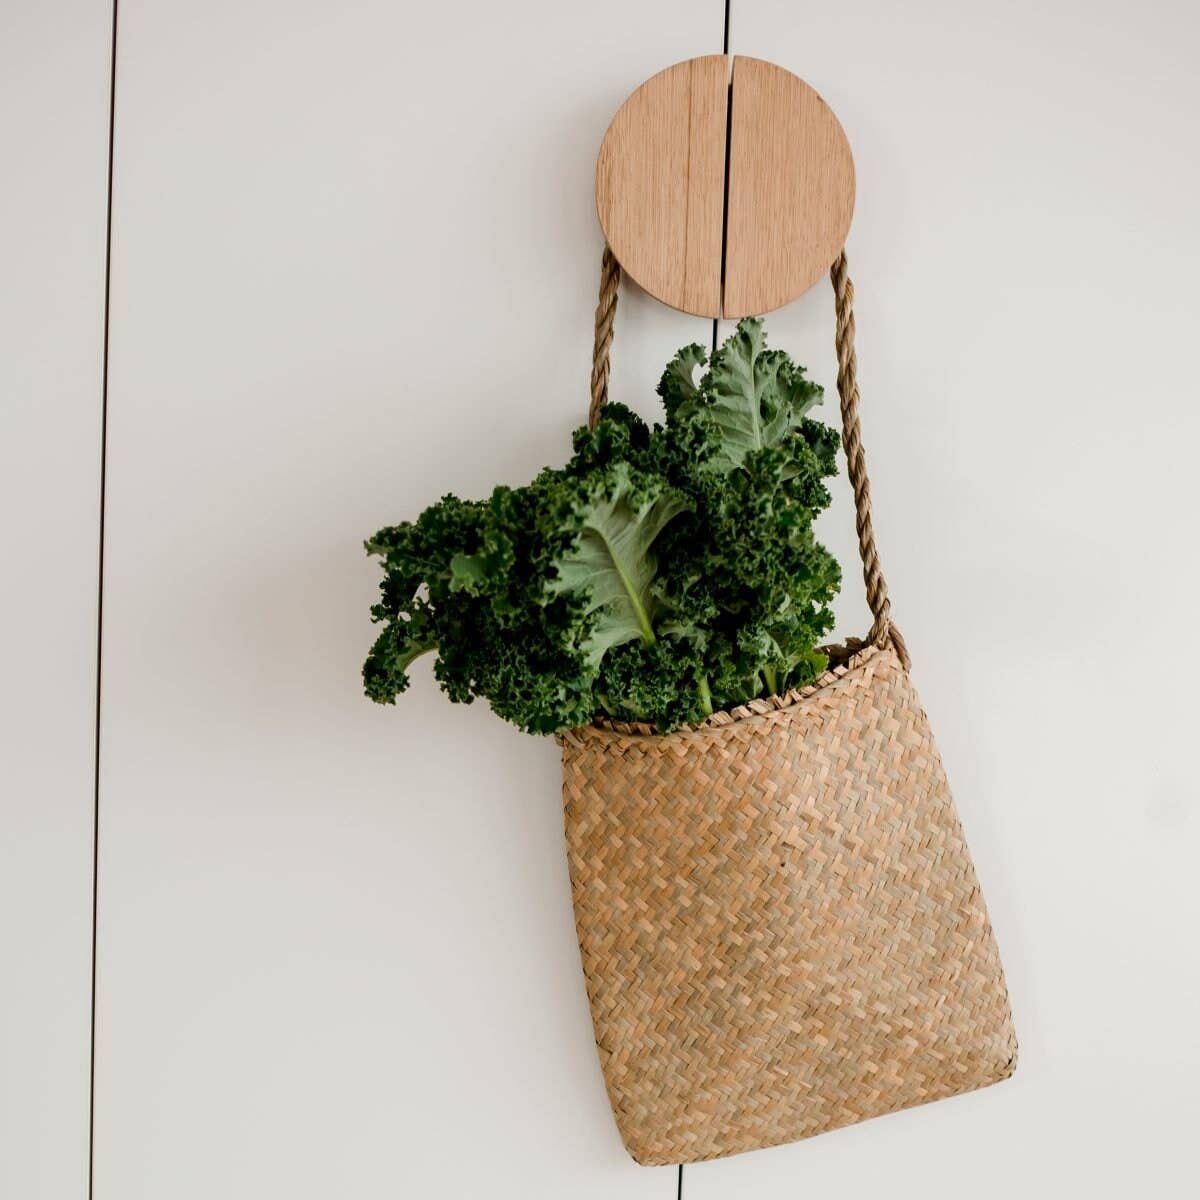 palm leaf handbag filled with kale